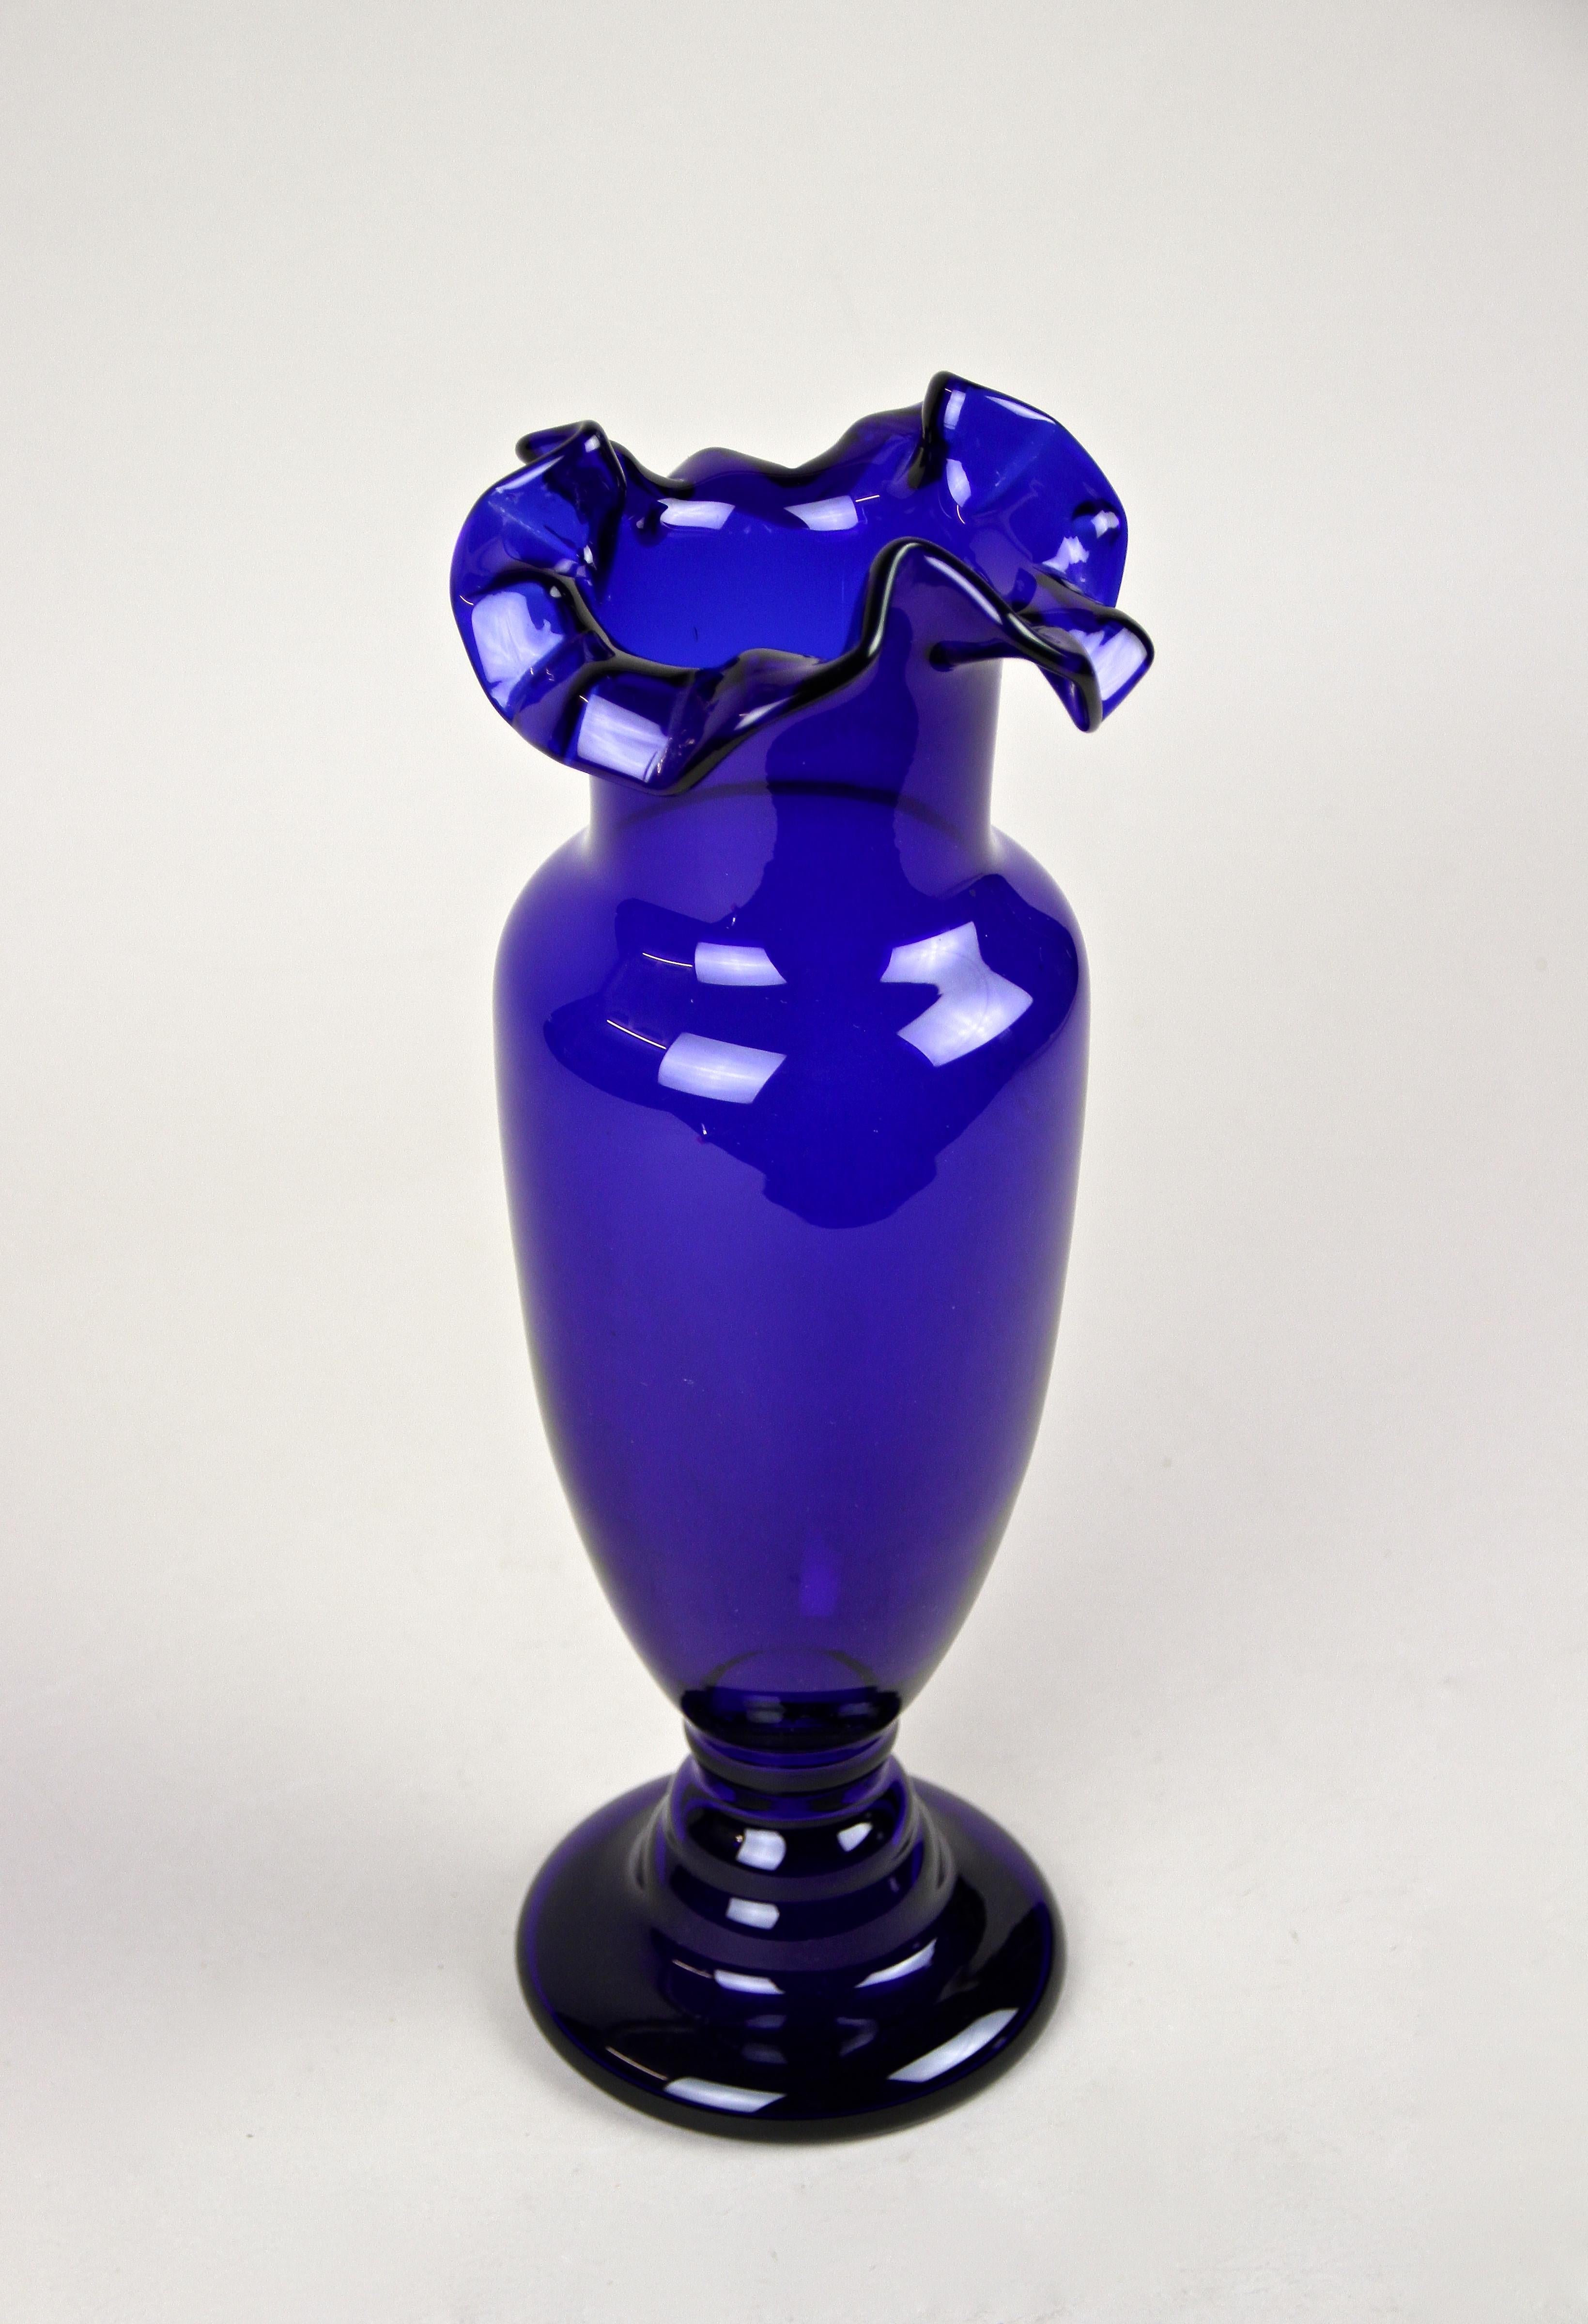 Faszinierende blaue Glasvase aus dem frühen 20. Jahrhundert aus der Jugendstilzeit in Österreich. Die um 1900 entworfene Glasvase zeigt einen bauchigen, mundgeblasenen dunkelblauen Körper und besticht durch ihren schön gebogenen, gerüschten